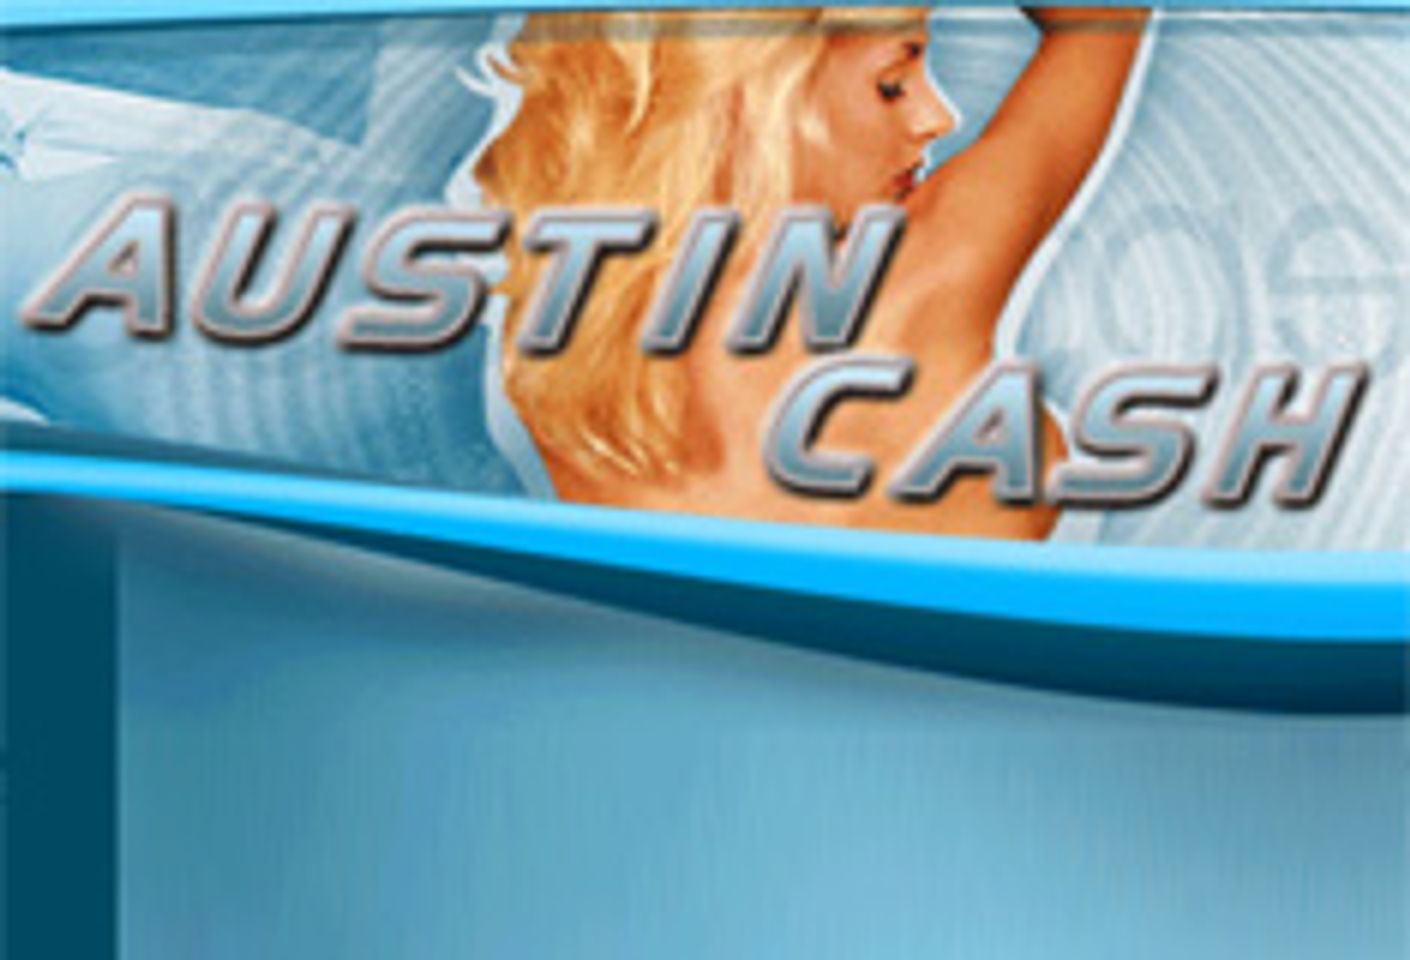 Austin Victoria Launches Affiliate Program